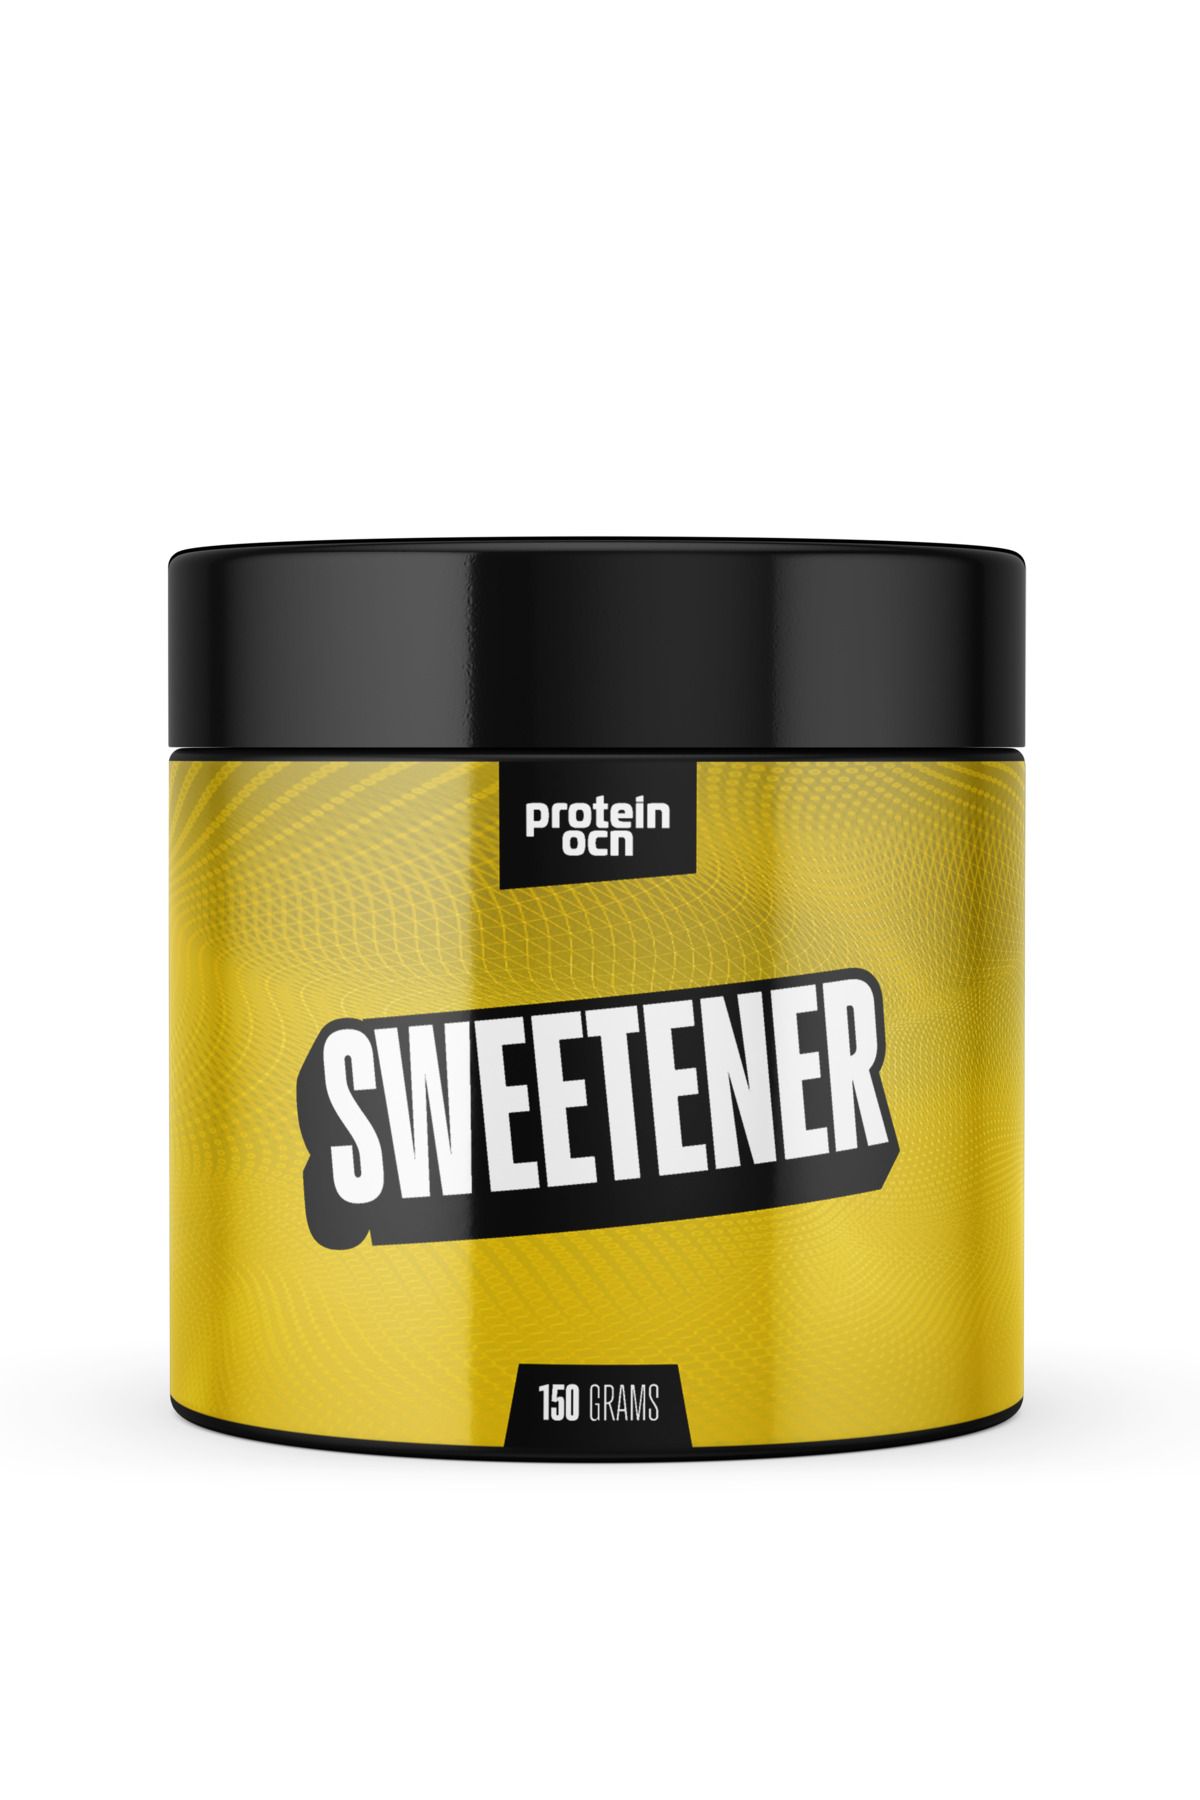 Proteinocean Sweetener - 150g